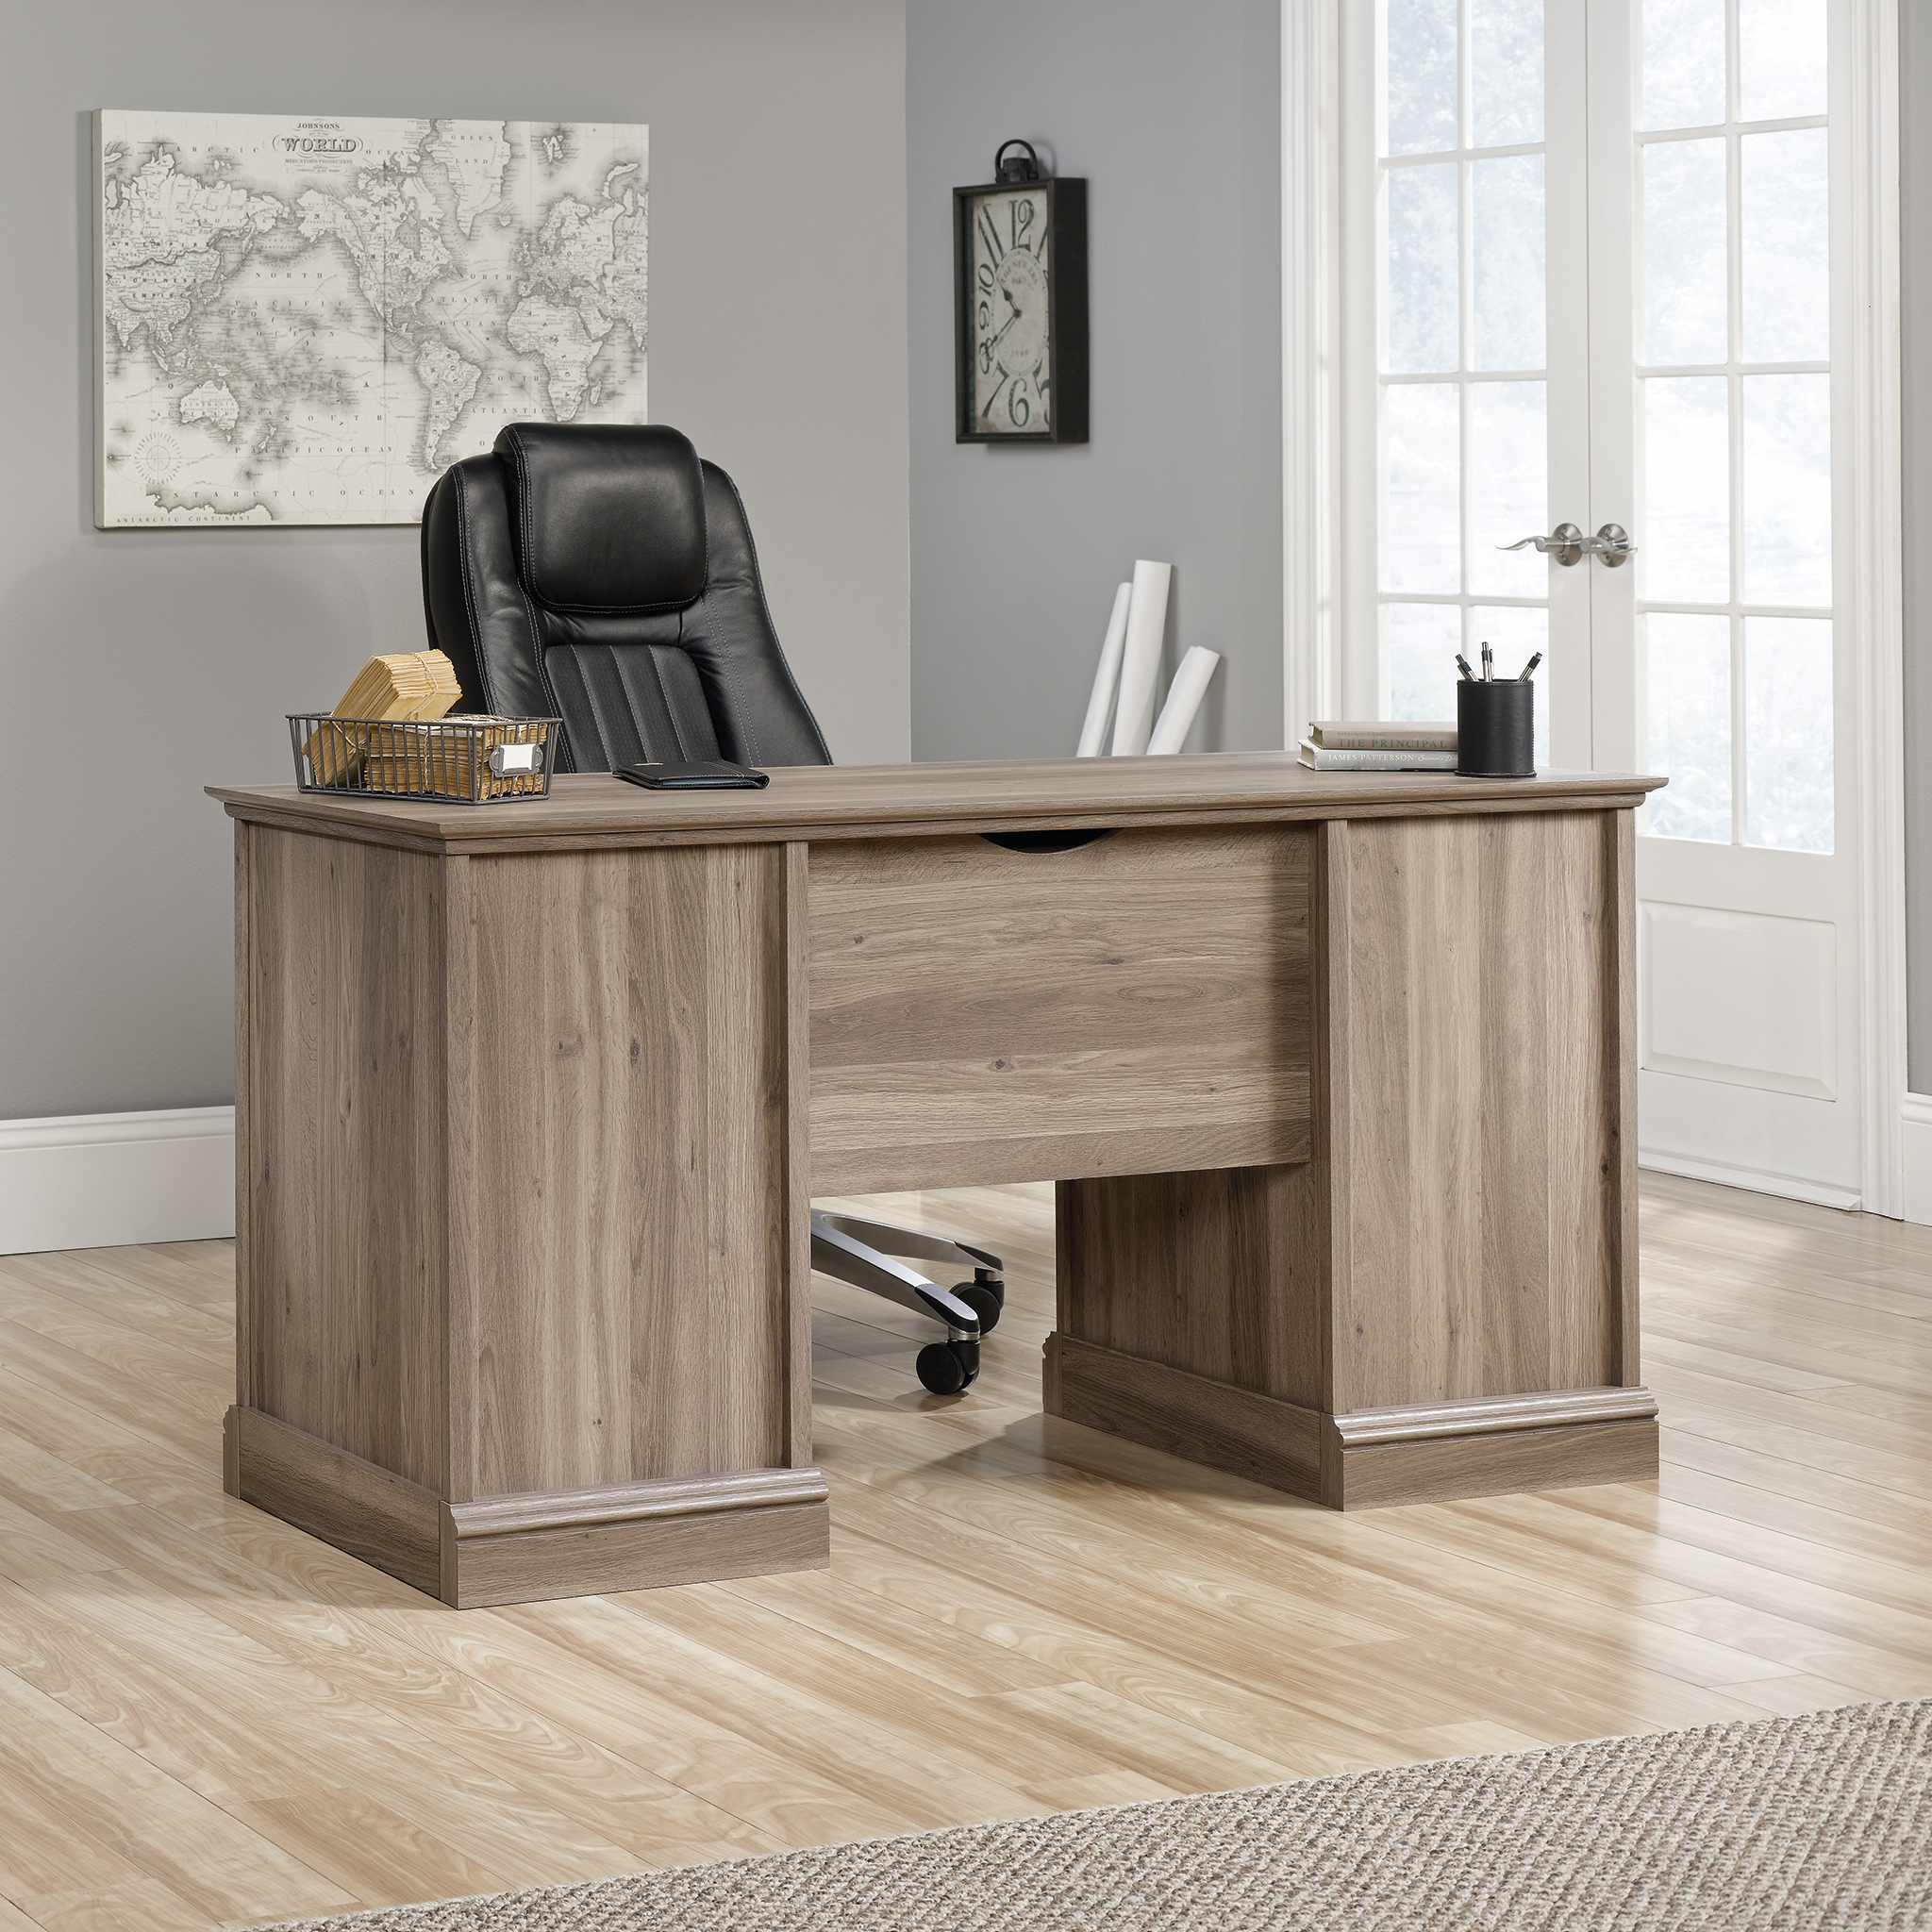 Sauder Barrister Lane Executive Desk, Salt Oak Finish - image 1 of 9